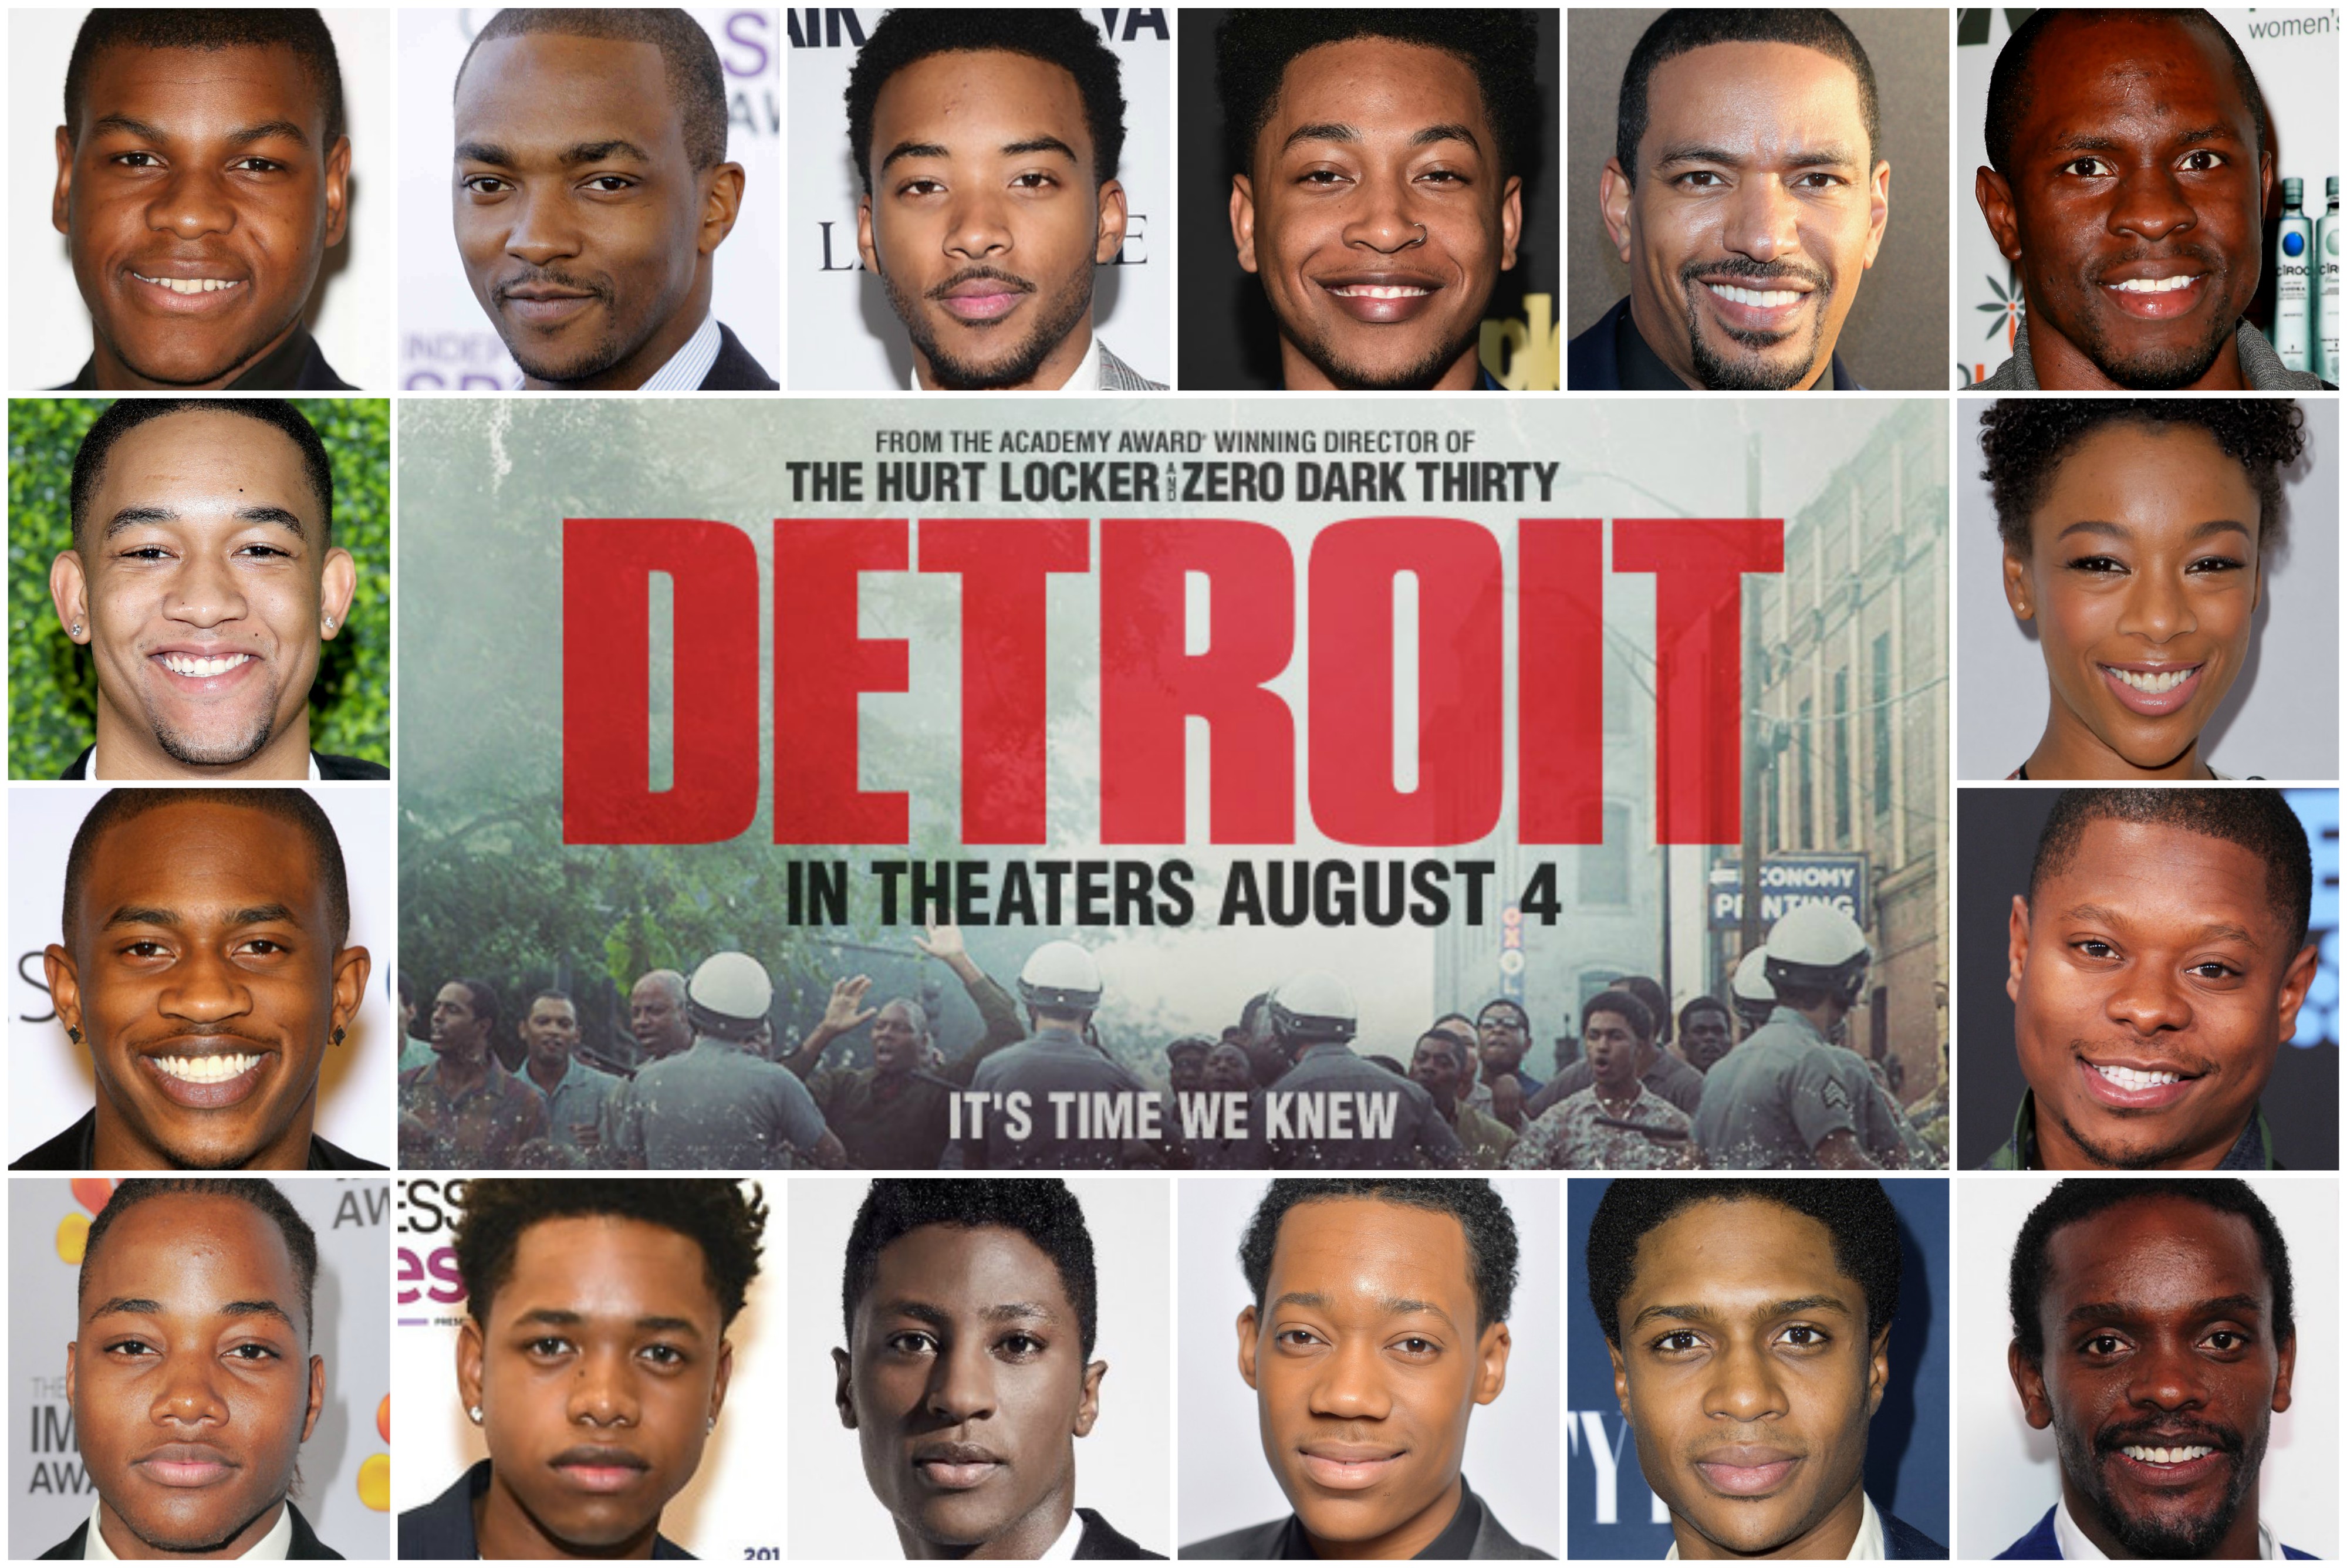 Film Detroit